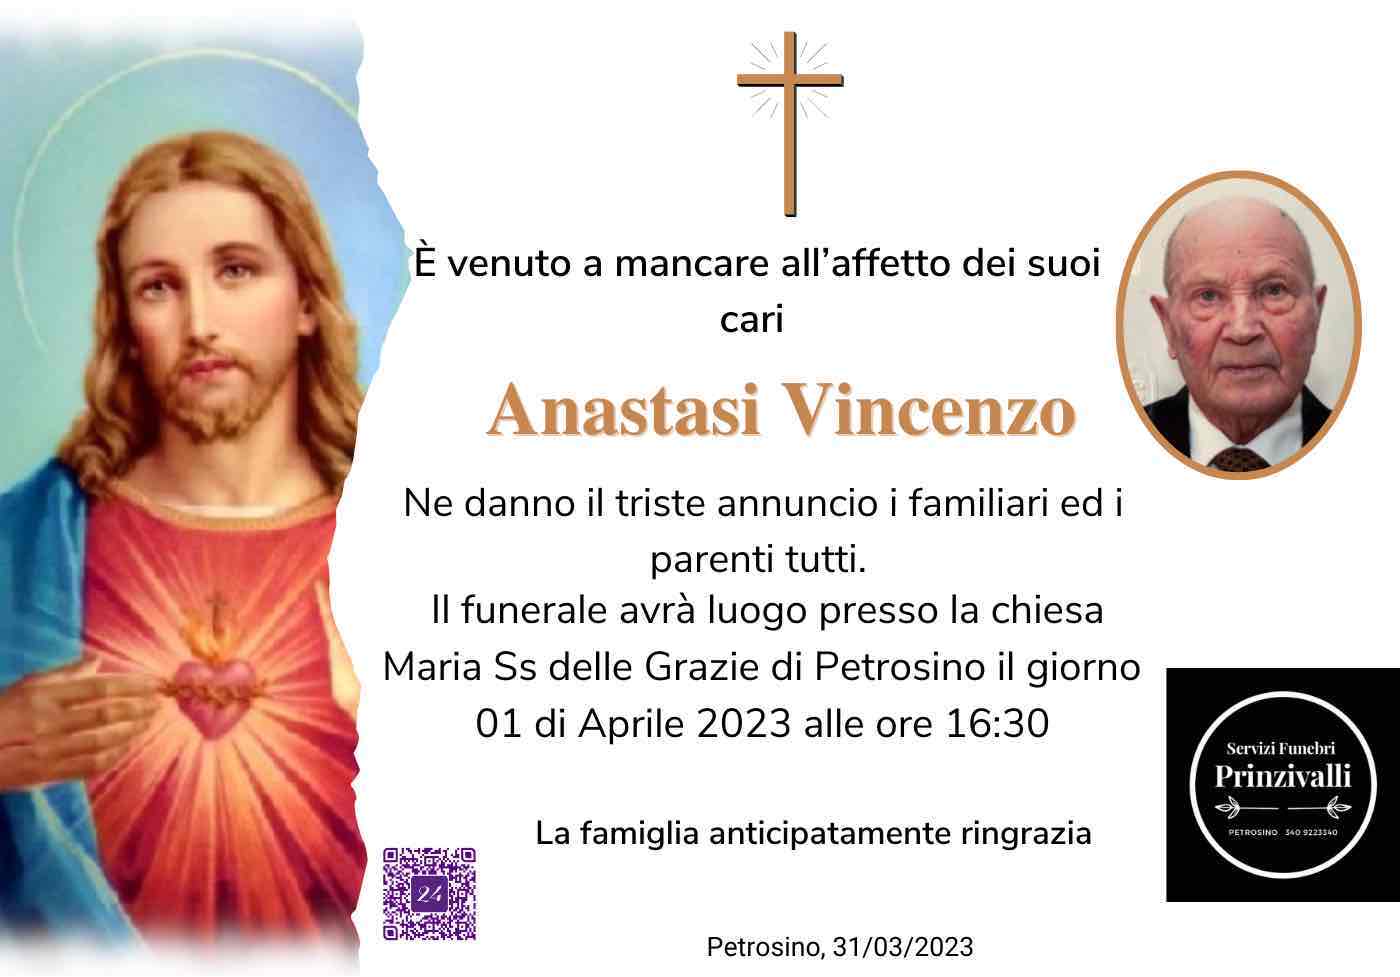 Vincenzo Anastasi